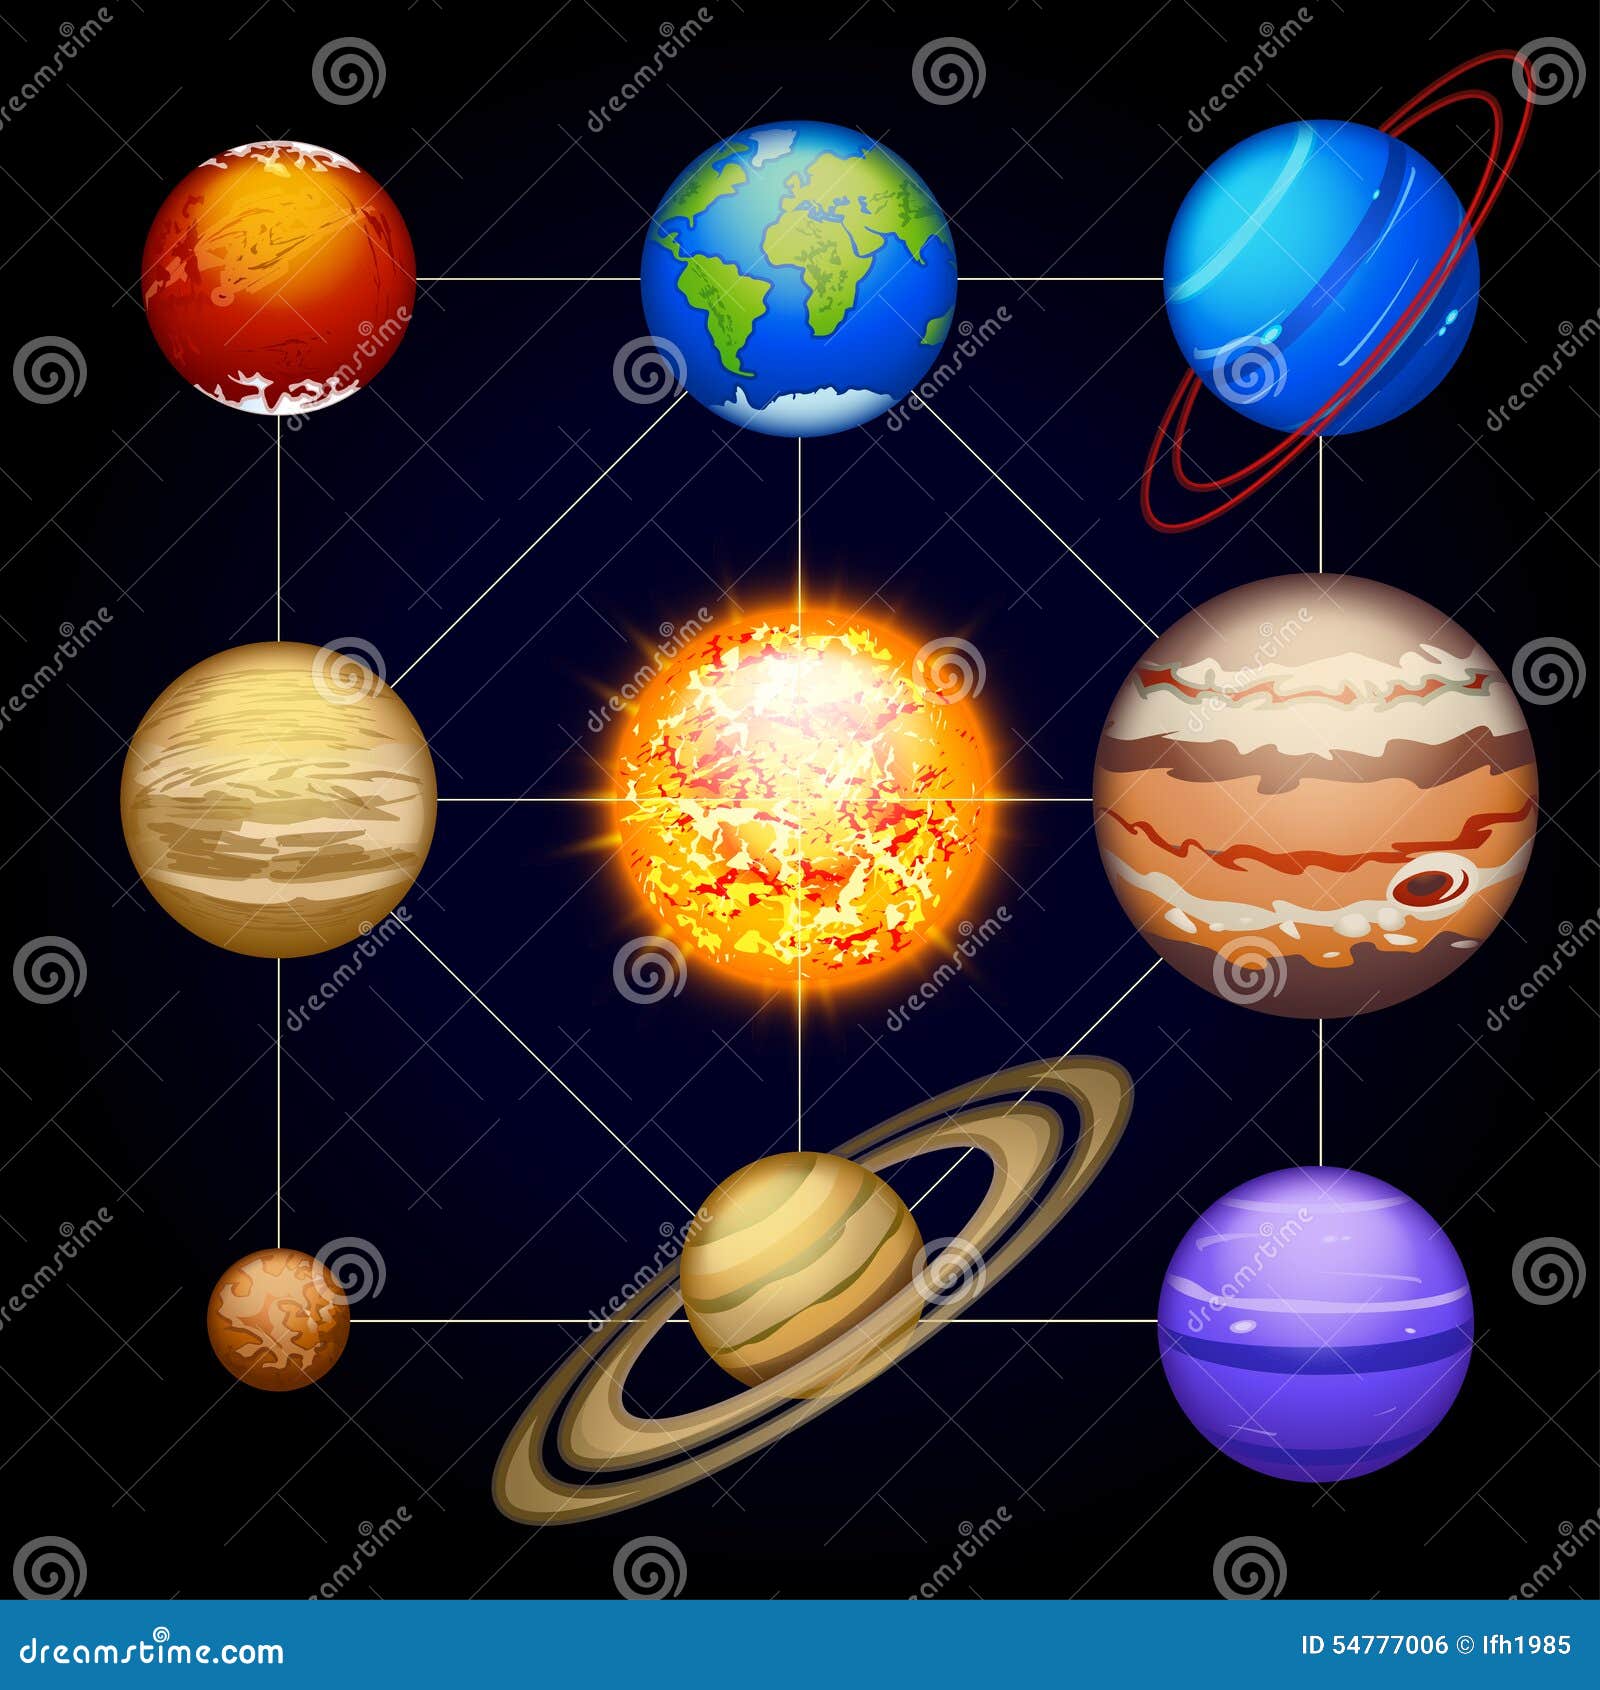 Как раскрасить планеты солнечной системы. Планеты солнечной системы для детей. Планеты солнечной системы для детей картинки. Планеты солнечной системы набор. Солнечная система мультяшная.